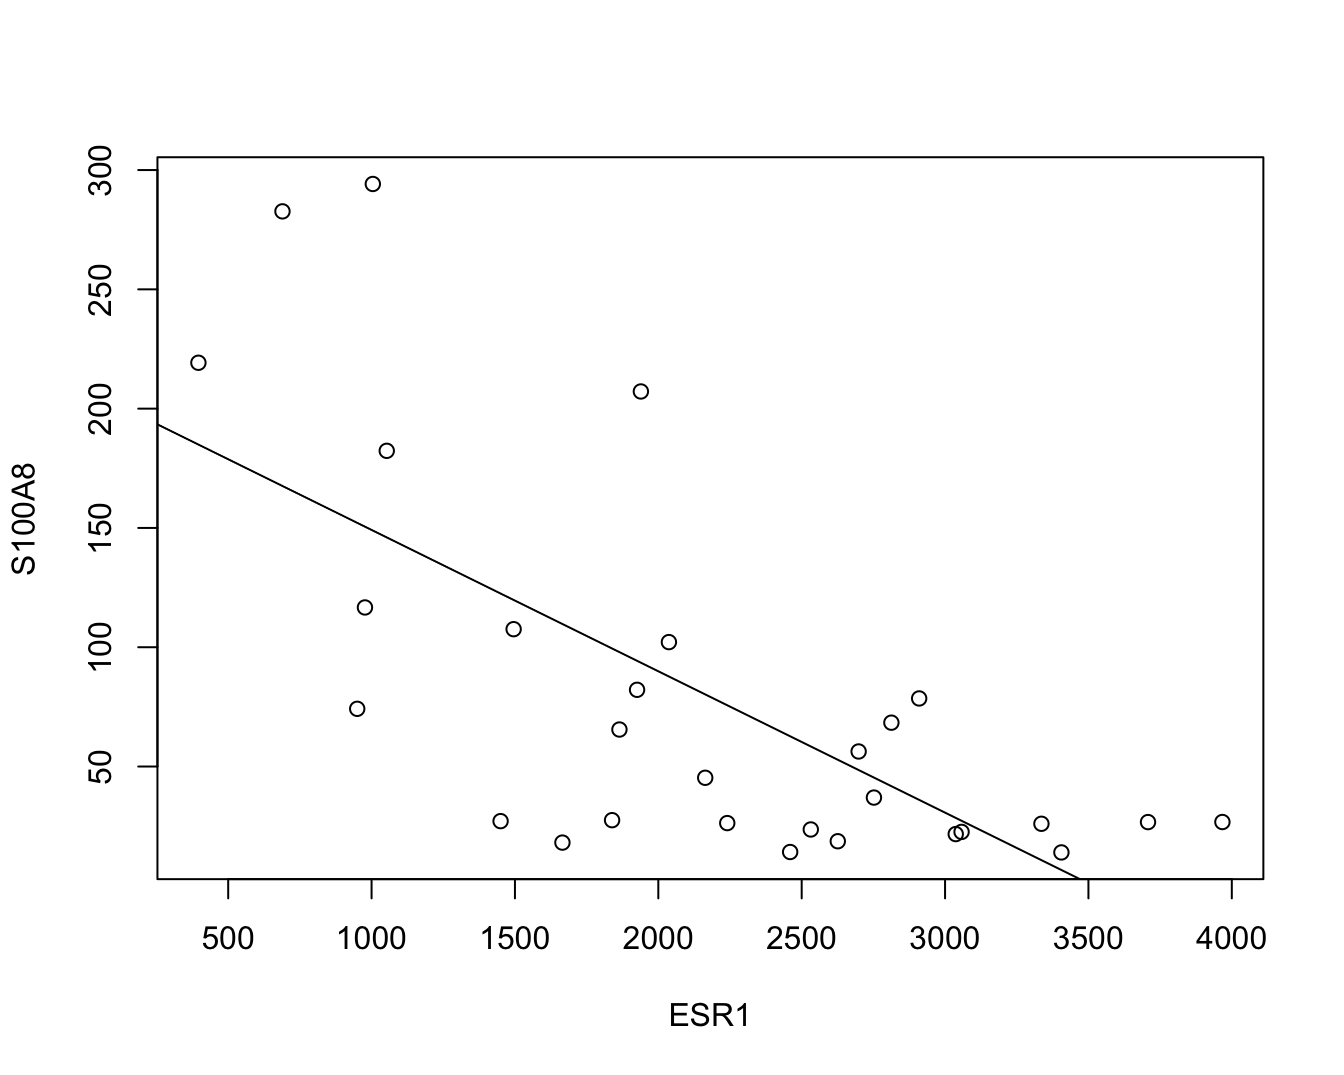 Scatterplot voor S100A8 expressie in functie van de ESR1 expressie met lineair model dat het verband tussen beide genen samenvat (na verwijdering van outliers in de S100A8 expressie, merk op dat we deze outliers in principe niet mochten verwijderen uit de dataset zoals we verder in dit hoofdstuk zullen zien).